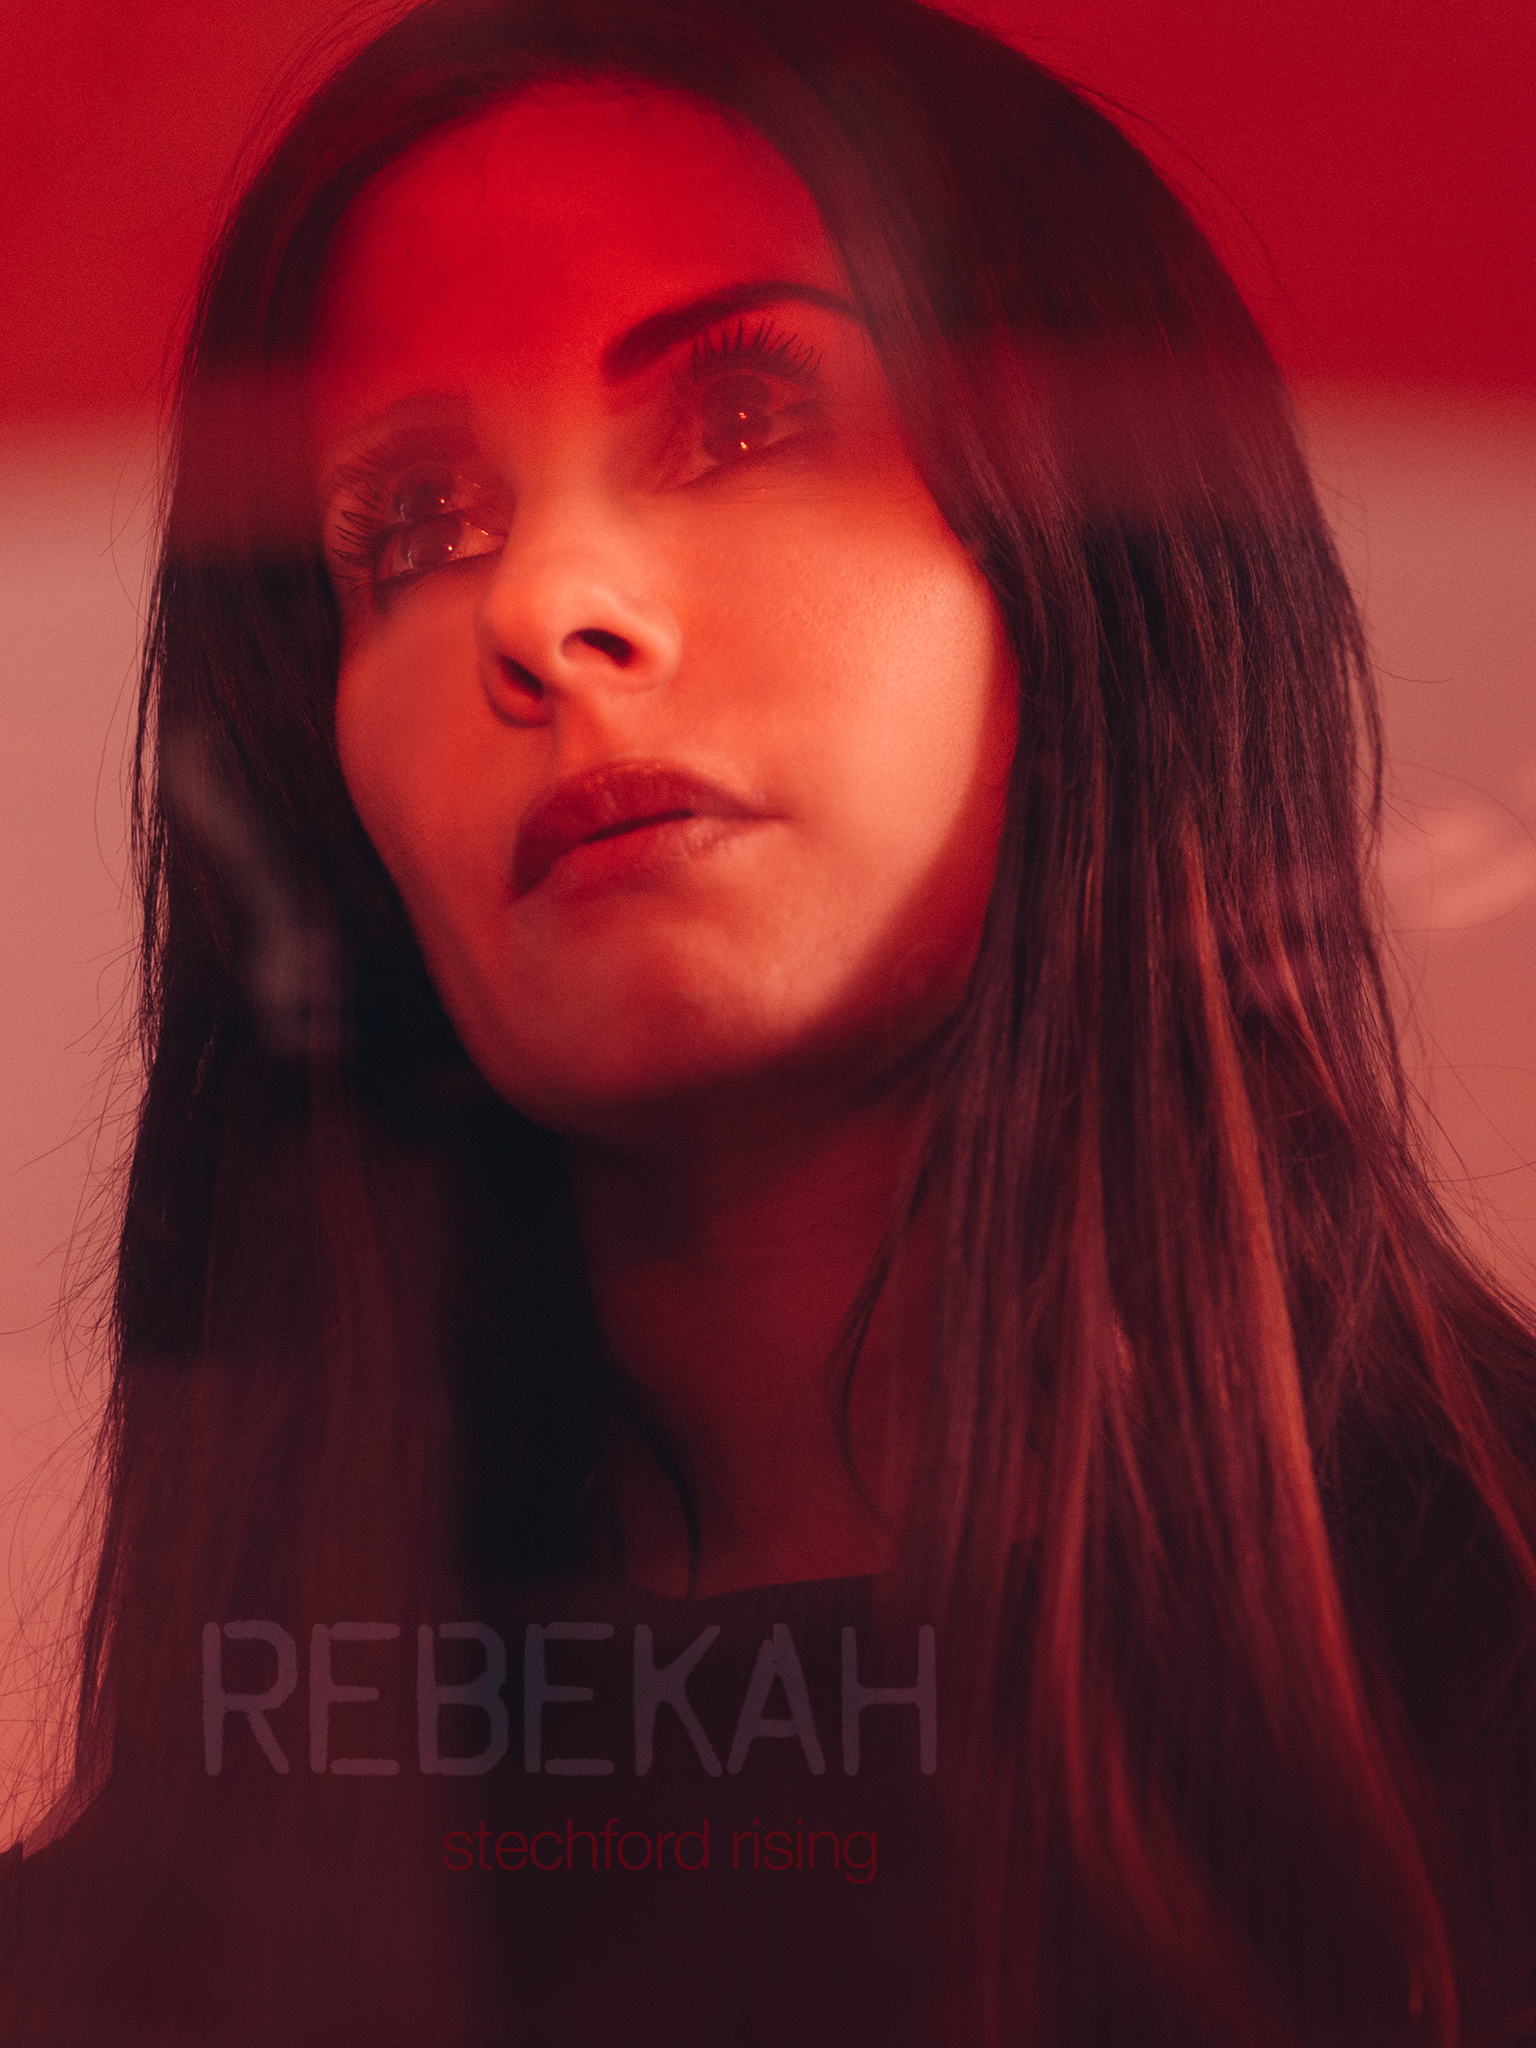 Rebekah: Stechford rising